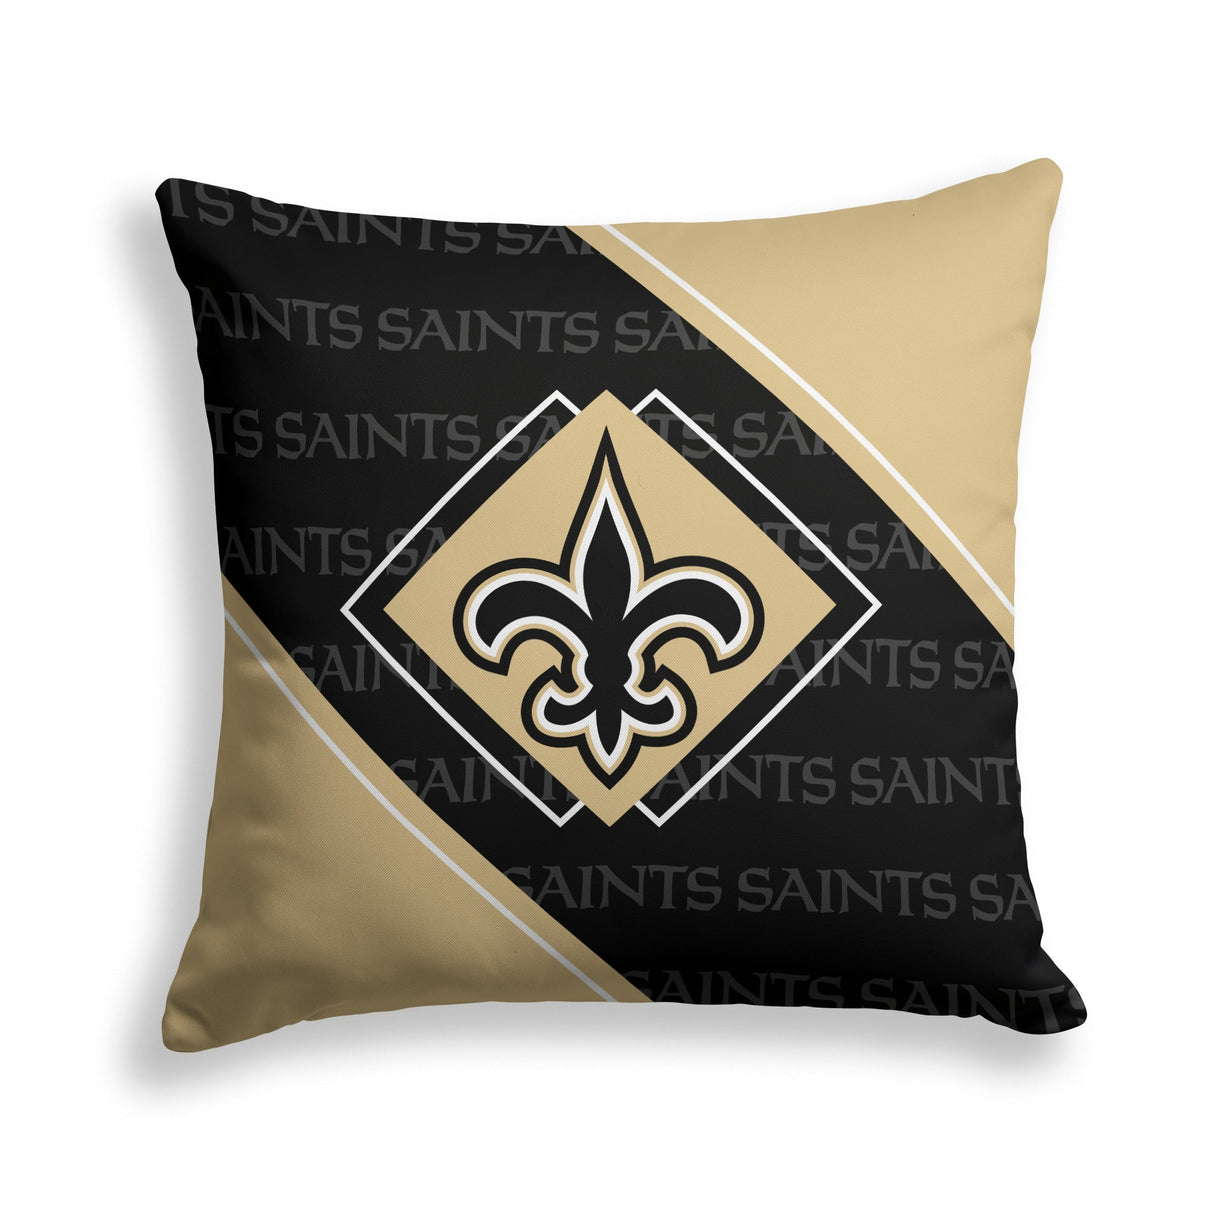 Pixsona New Orleans Saints Boxed Throw Pillow